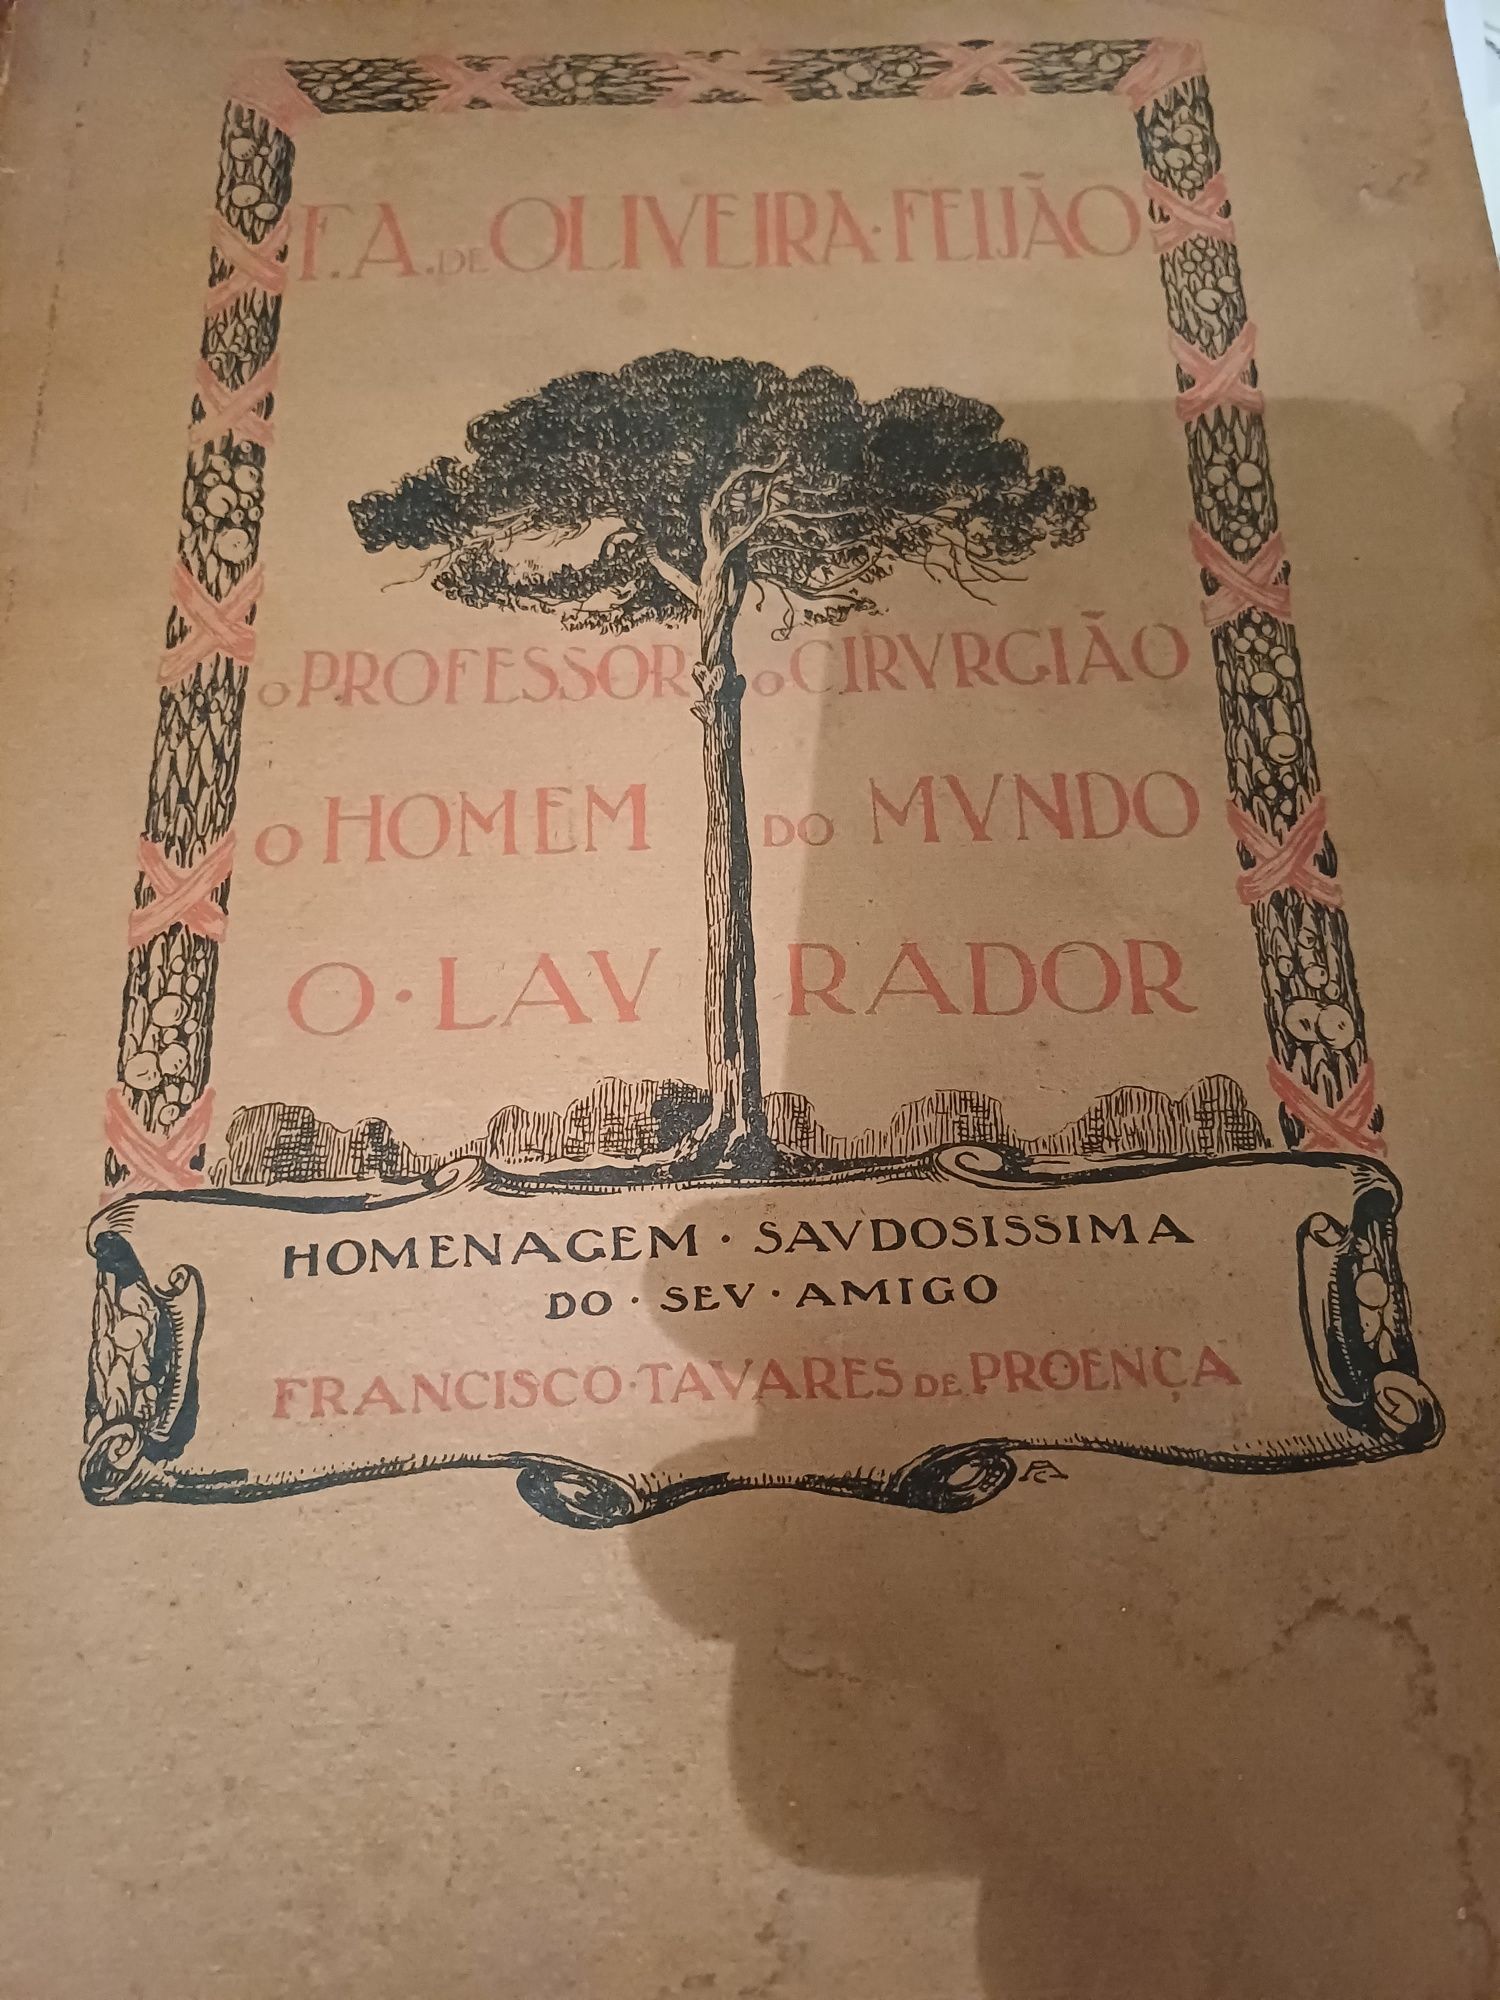 Livro F.A. Oliveira feijão